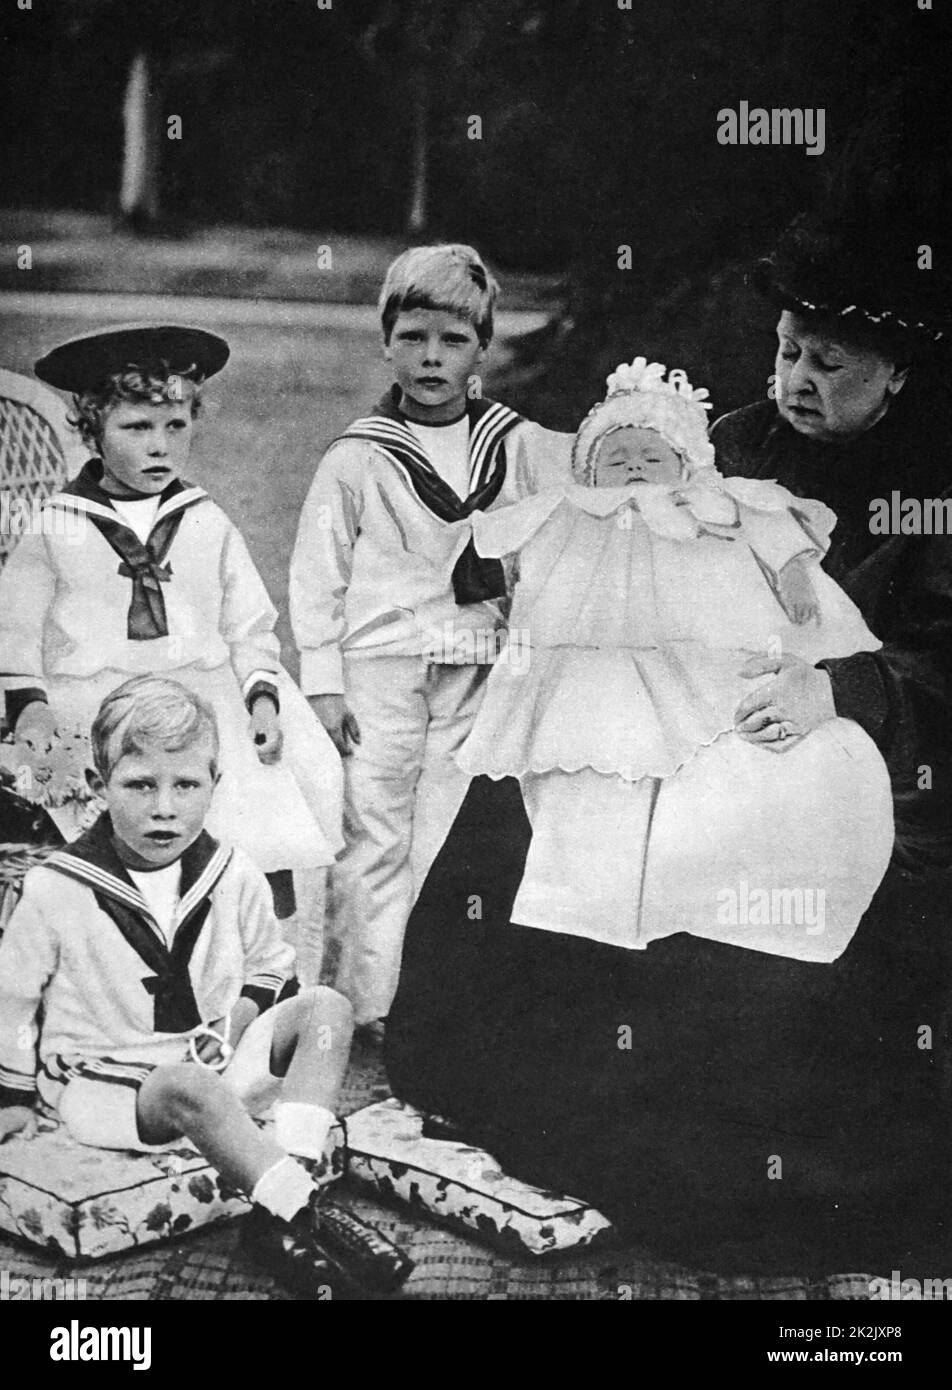 Fotografia della regina Victoria (1819-1901) con alcuni dei suoi giovani nipoti compresi; Prince Albert (più tardi re George VI), la Principessa Victoria, Prince Edward (più tardi re Edward VIII) e il principe Henry. In data xx secolo Foto Stock